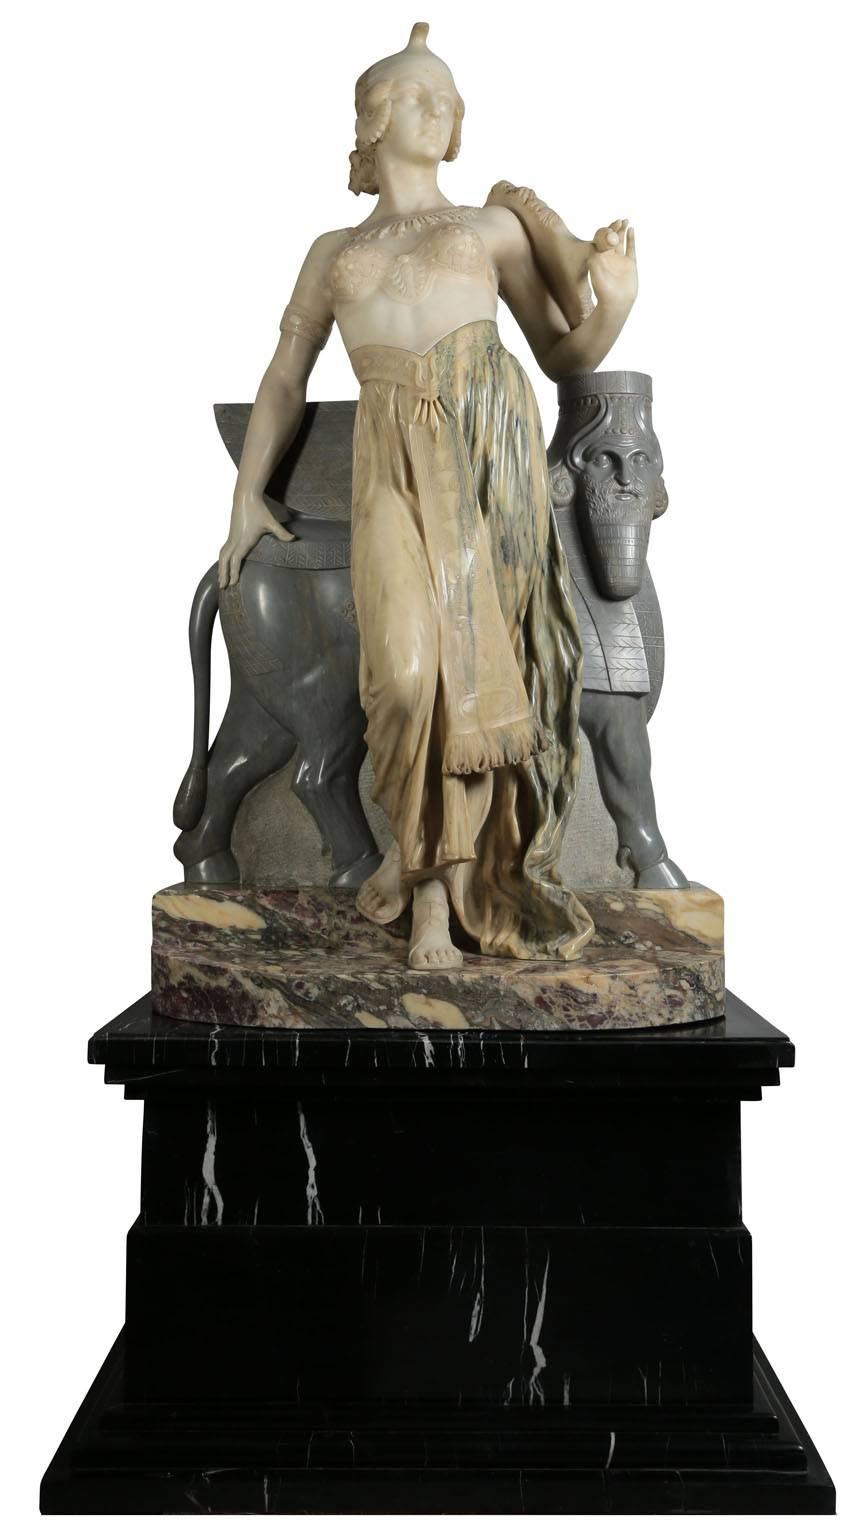 Eliseo Tuderte Fattorini (italien, 1830-1887). Très belle figure de Cléopâtre en marbre italien du XIXe siècle, grandeur nature. L'impressionnante sculpture en marbre 